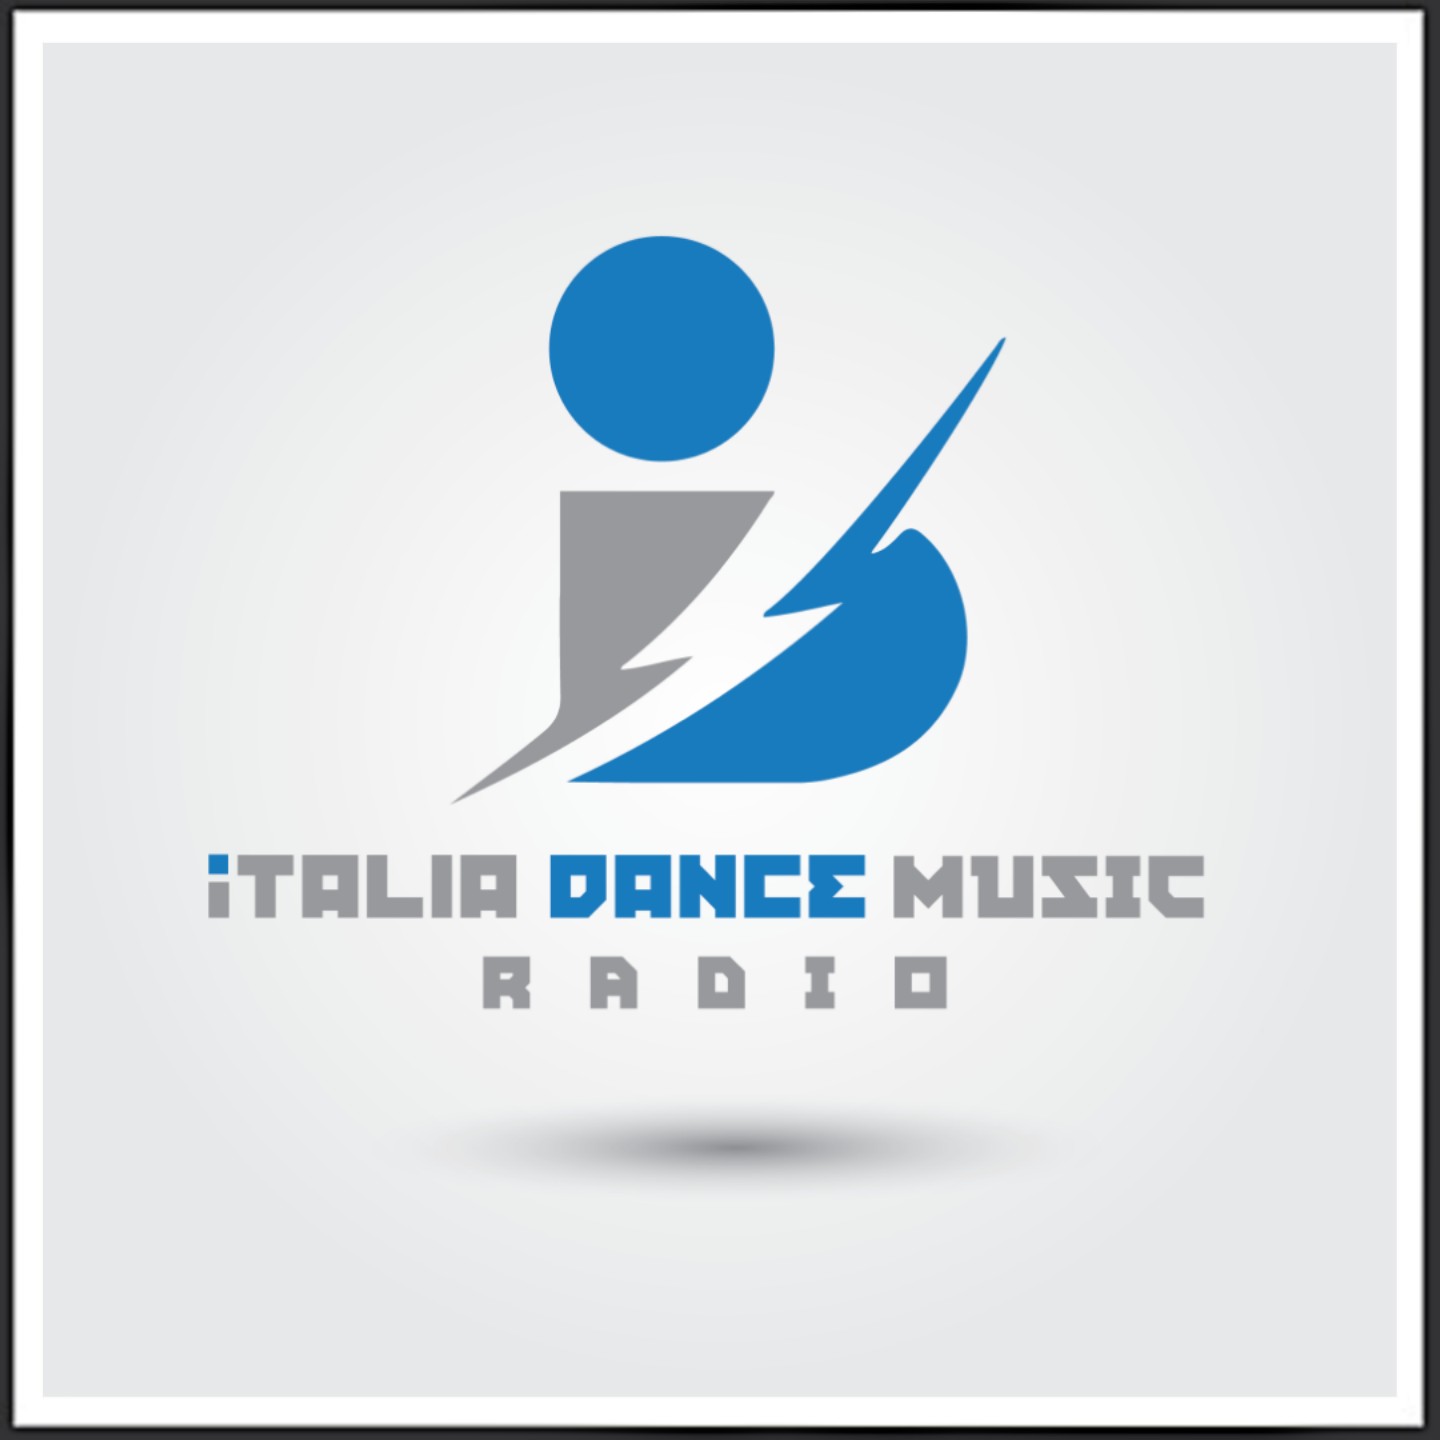 ITALIA DANCE MUSIC